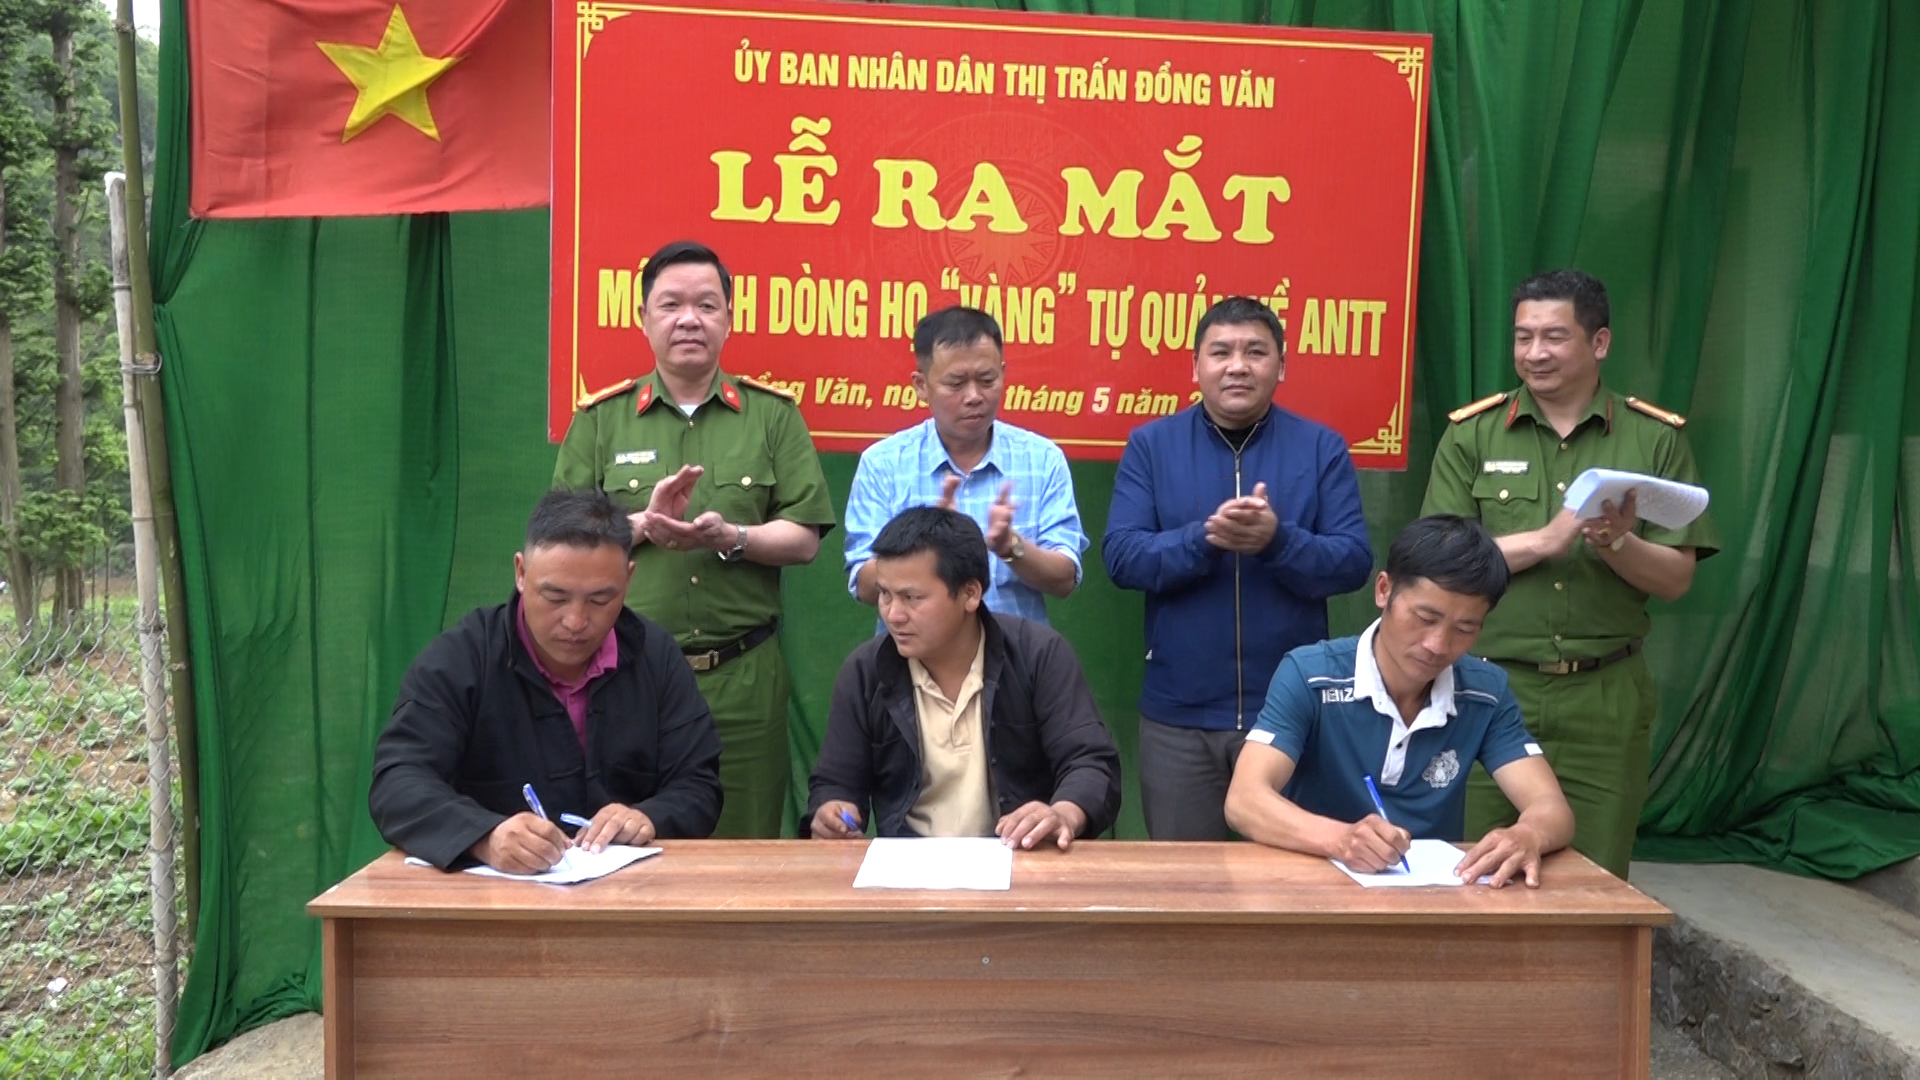 Công an Thị trấn Đồng Văn tổ chức Lễ ra mắt Mô hình dòng họ Vàng tự quản về An ninh trật tự thôn thôn Lùng Lú